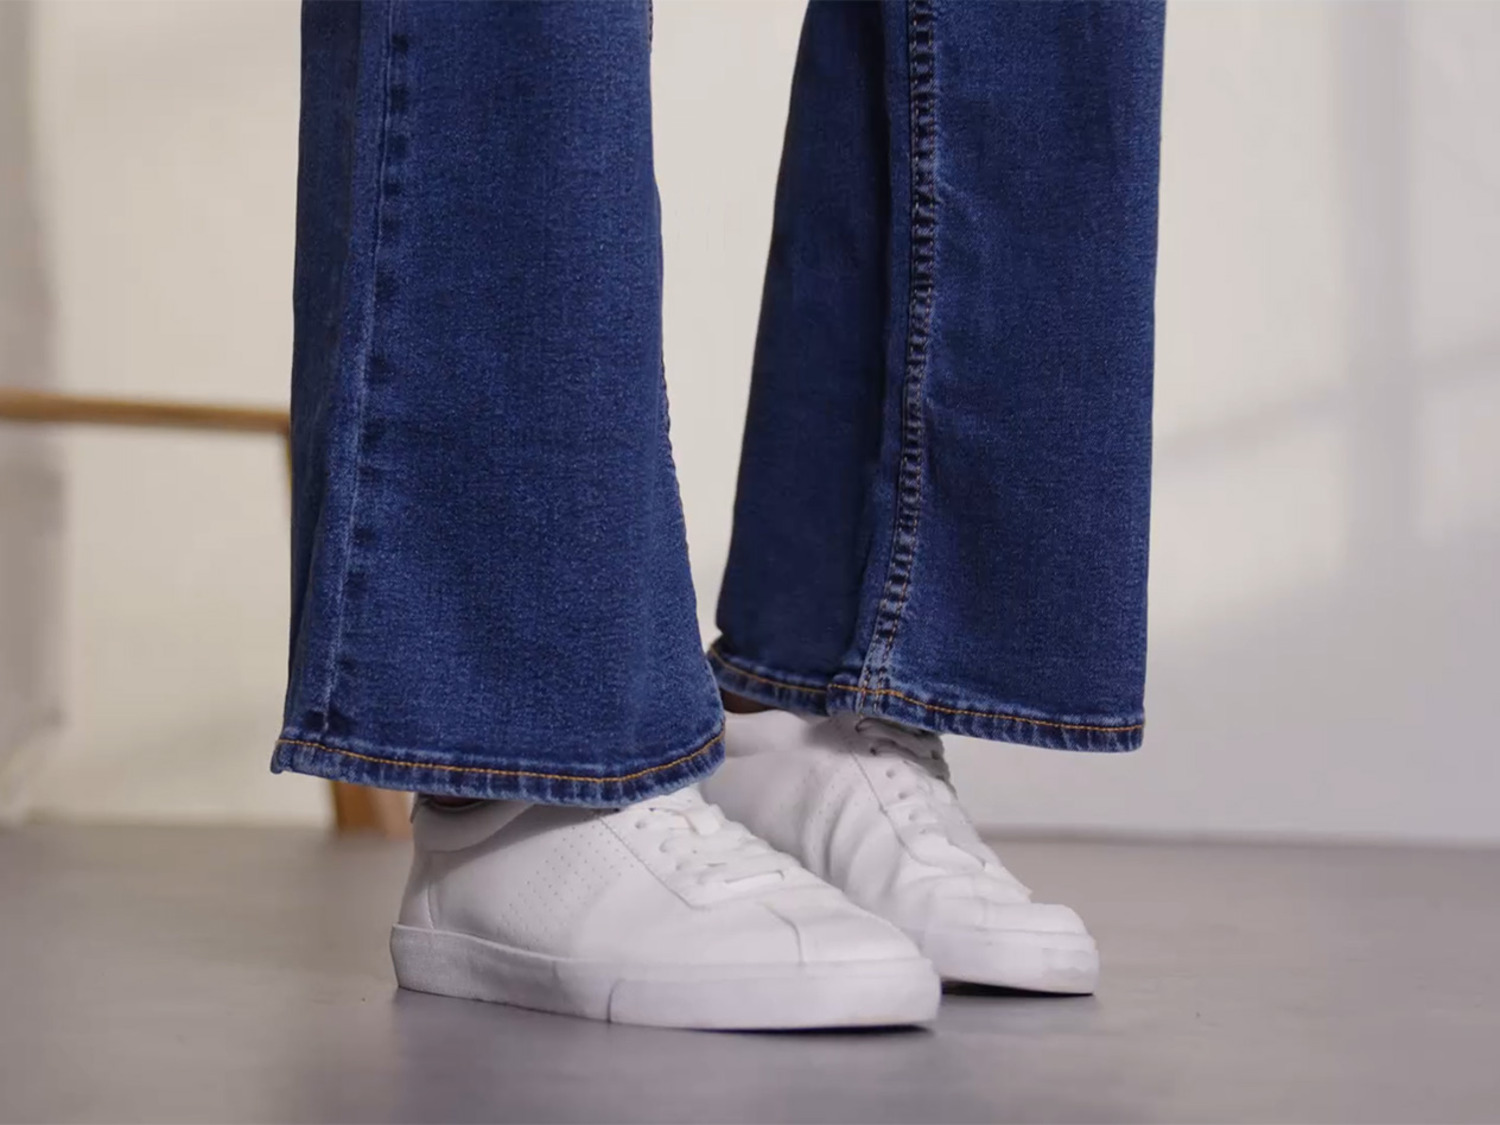 esmara® Dames jeans online | LIDL